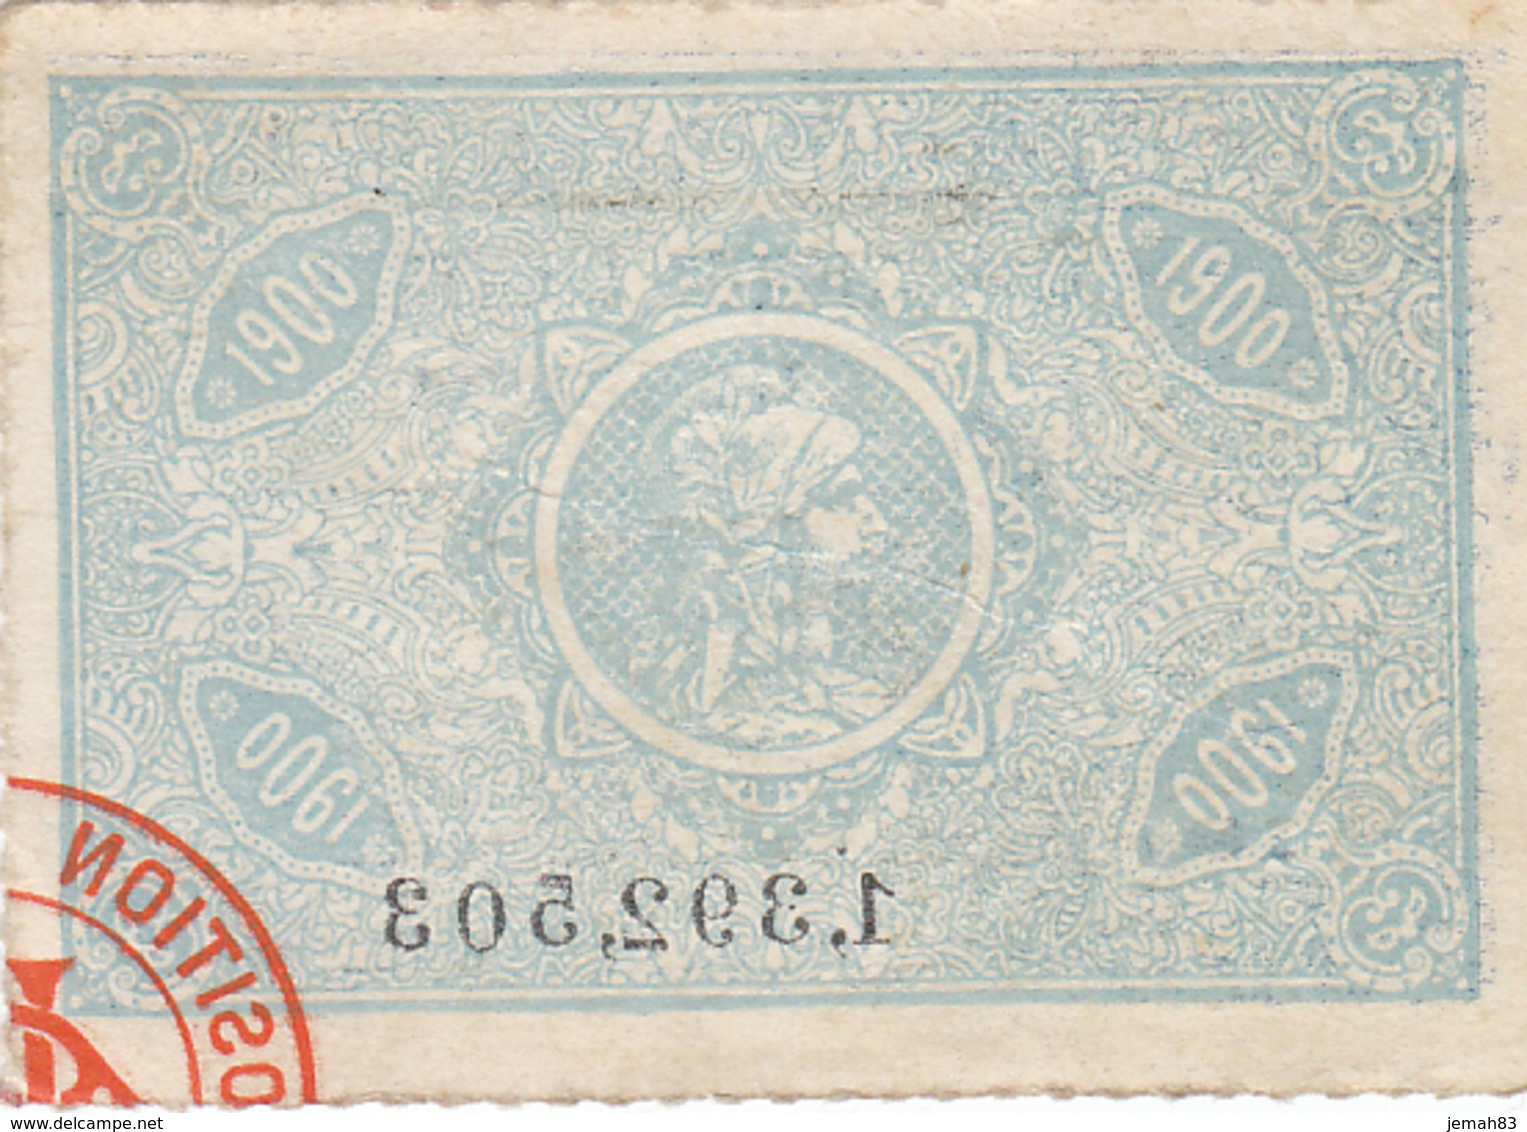 Ticket Entree Exposition Universelle De 1900 N°19 (LOT AE 23) - Tickets D'entrée